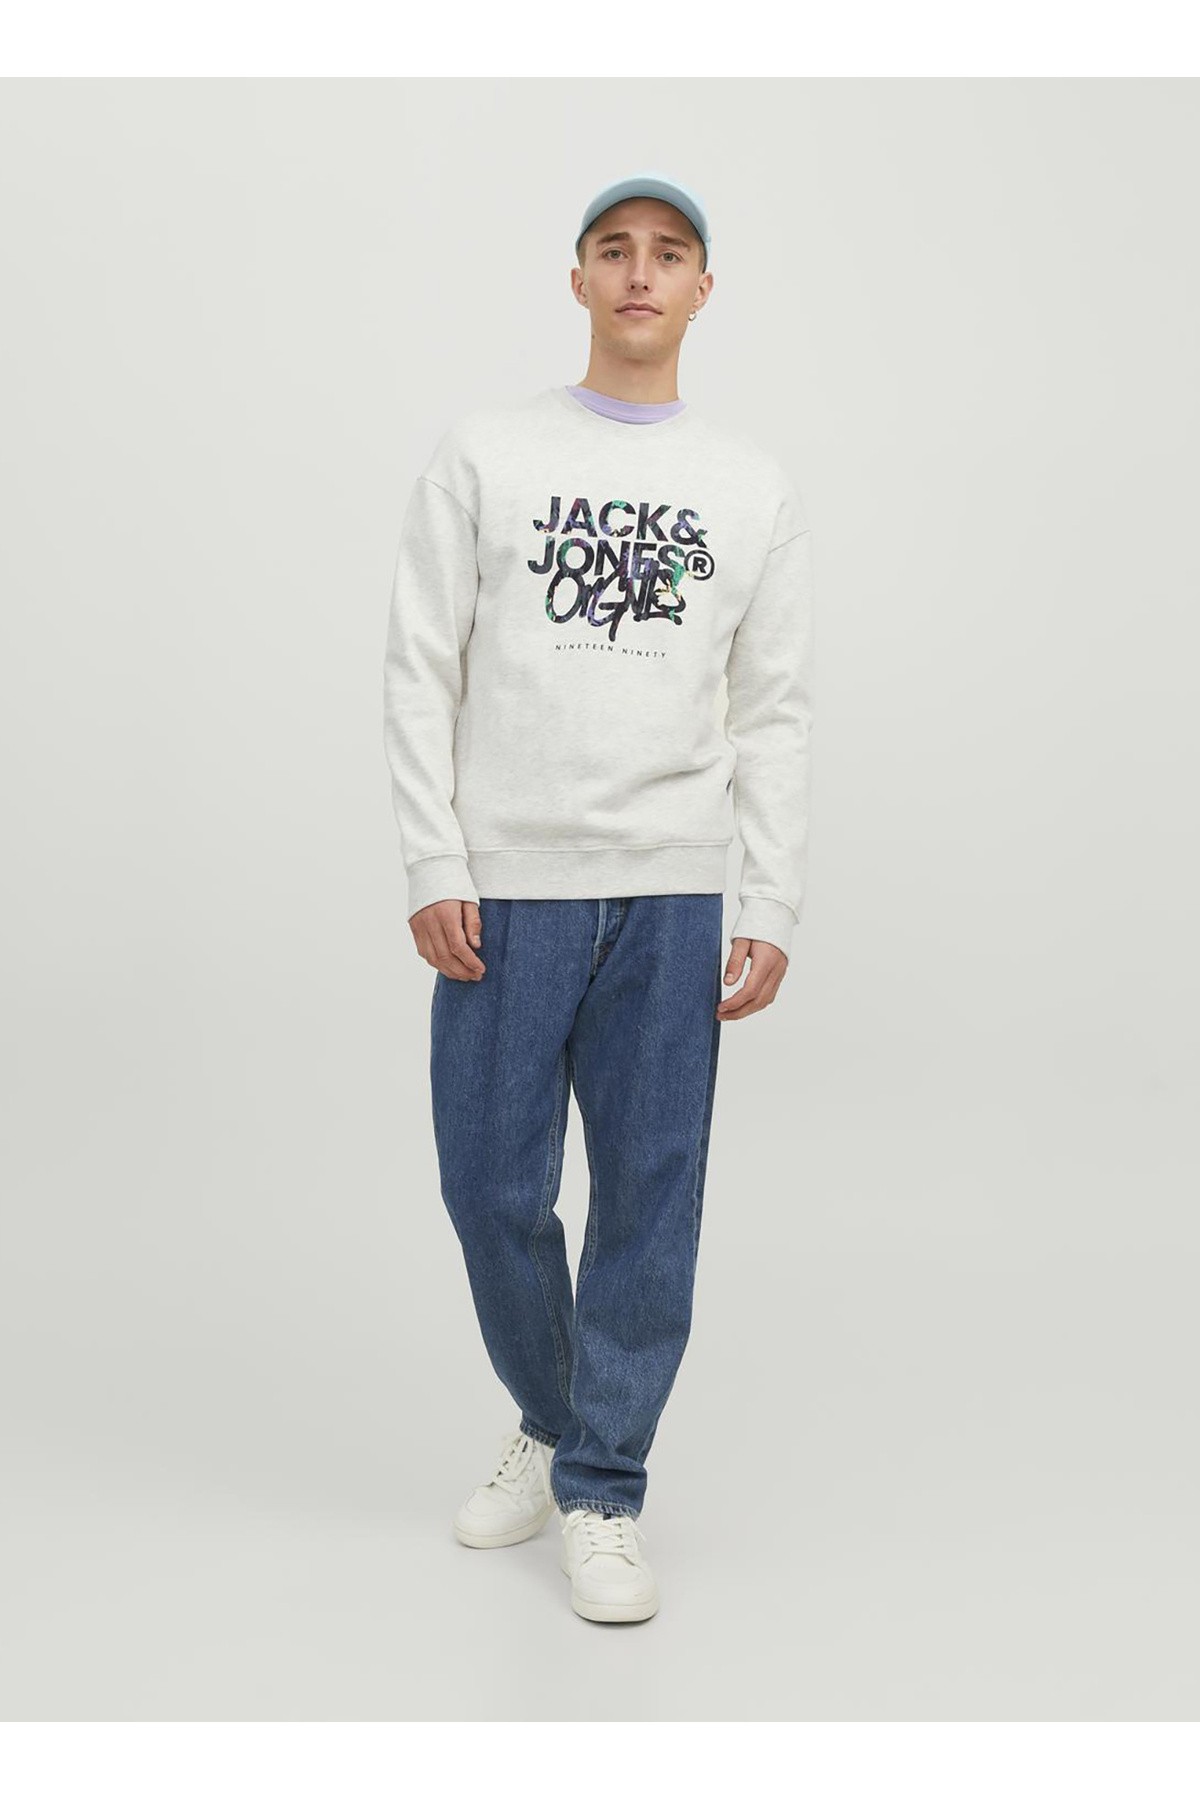 Jack & Jones Jorsilverlake Crew Erkek Sweatshirt 12242366 - Açık Gri